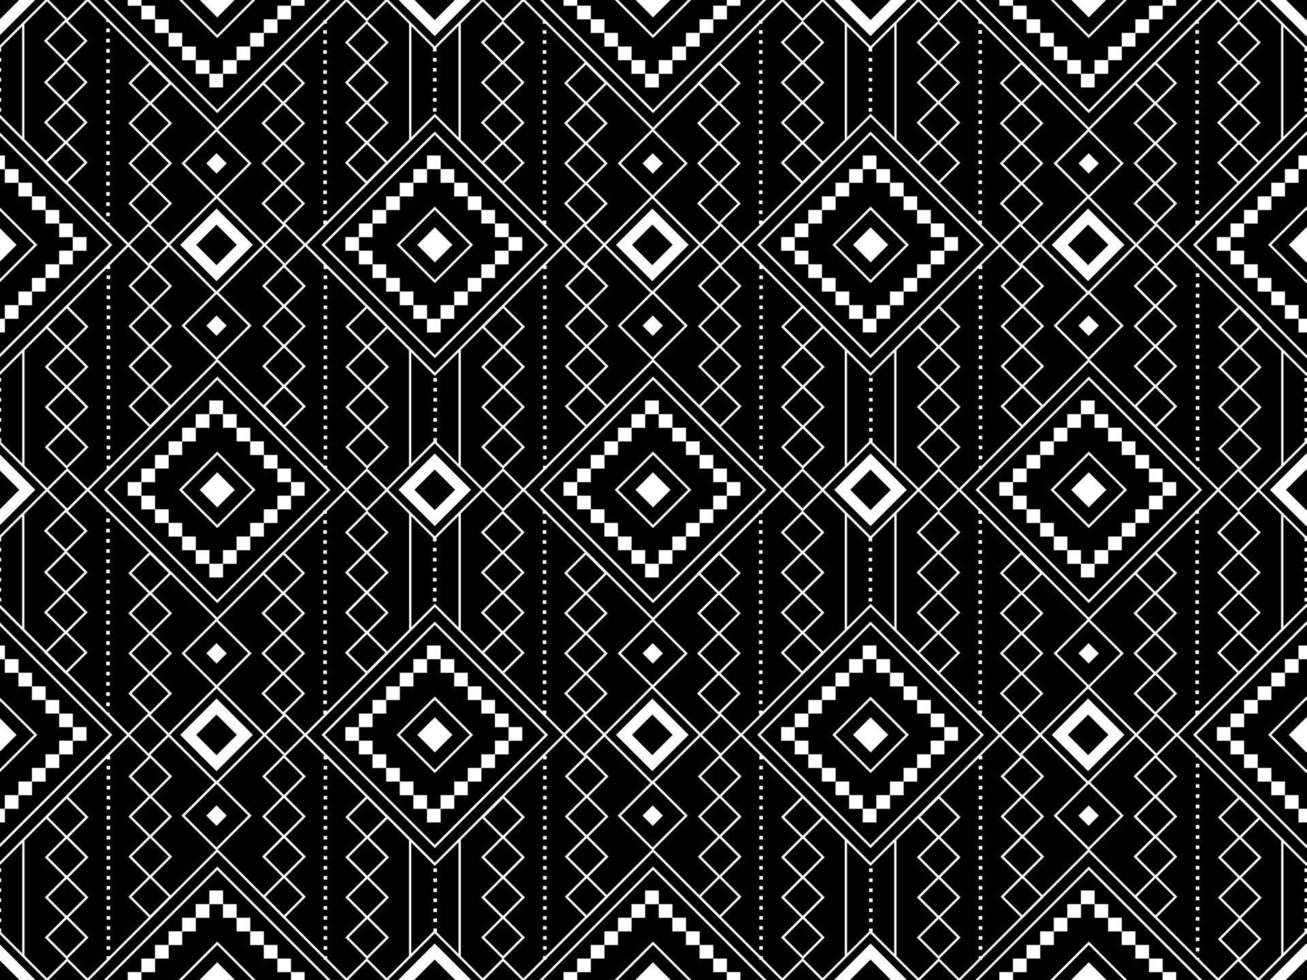 abstrakte geometrische Stammes- ethnische Ikat-Folklore-Diamanten orientalisches nahtloses Muster traditionelles Design für Hintergrund, Teppich, Tapete, Kleidung, Stoff, Verpackung, Druck, Batik, Folk, Strickvektorillustration vektor